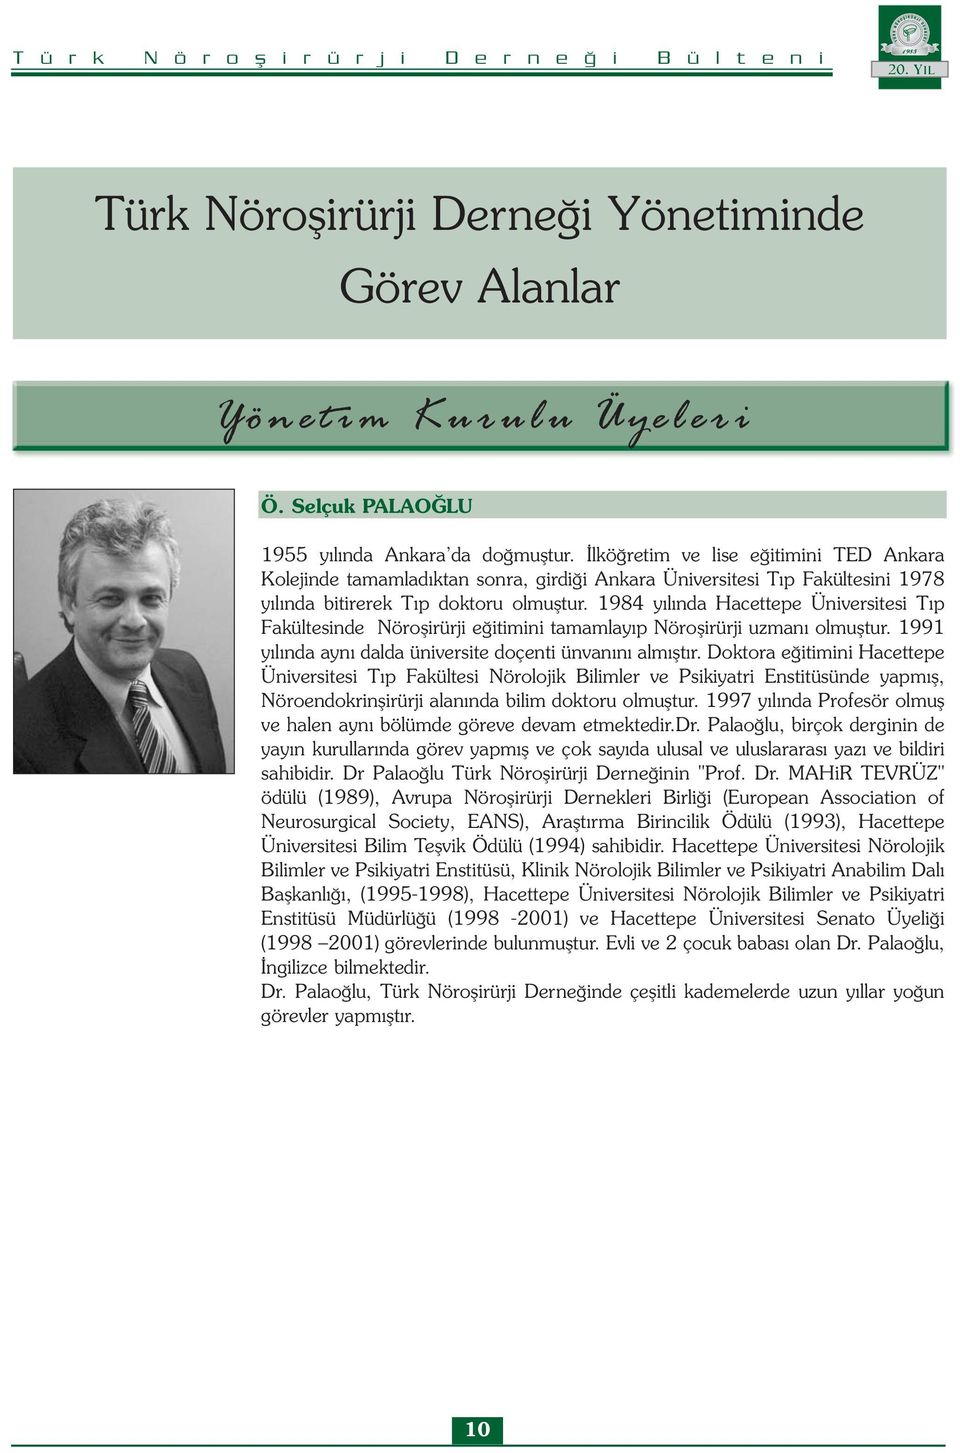 1984 yılında Hacettepe Üniversitesi Tıp Fakültesinde Nöroşirürji eğitimini tamamlayıp Nöroşirürji uzmanı olmuştur. 1991 yılında aynı dalda üniversite doçenti ünvanını almıştır.